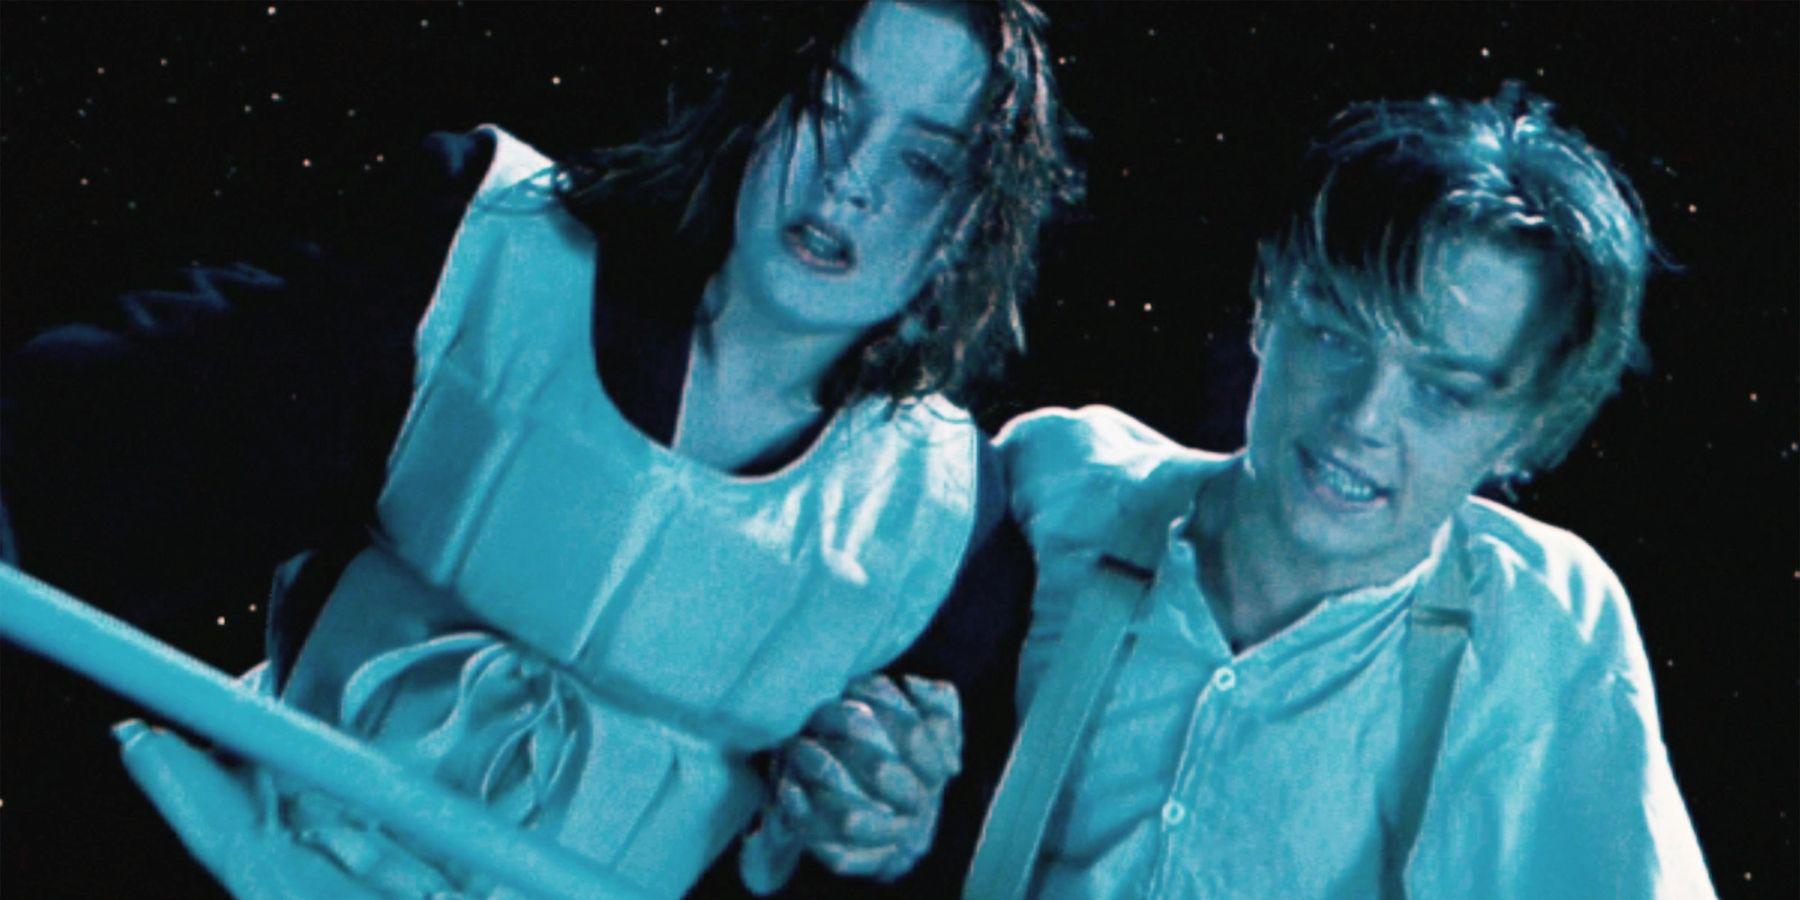 Membros da equipe do Titanic relembram o fiasco induzido por drogas no set